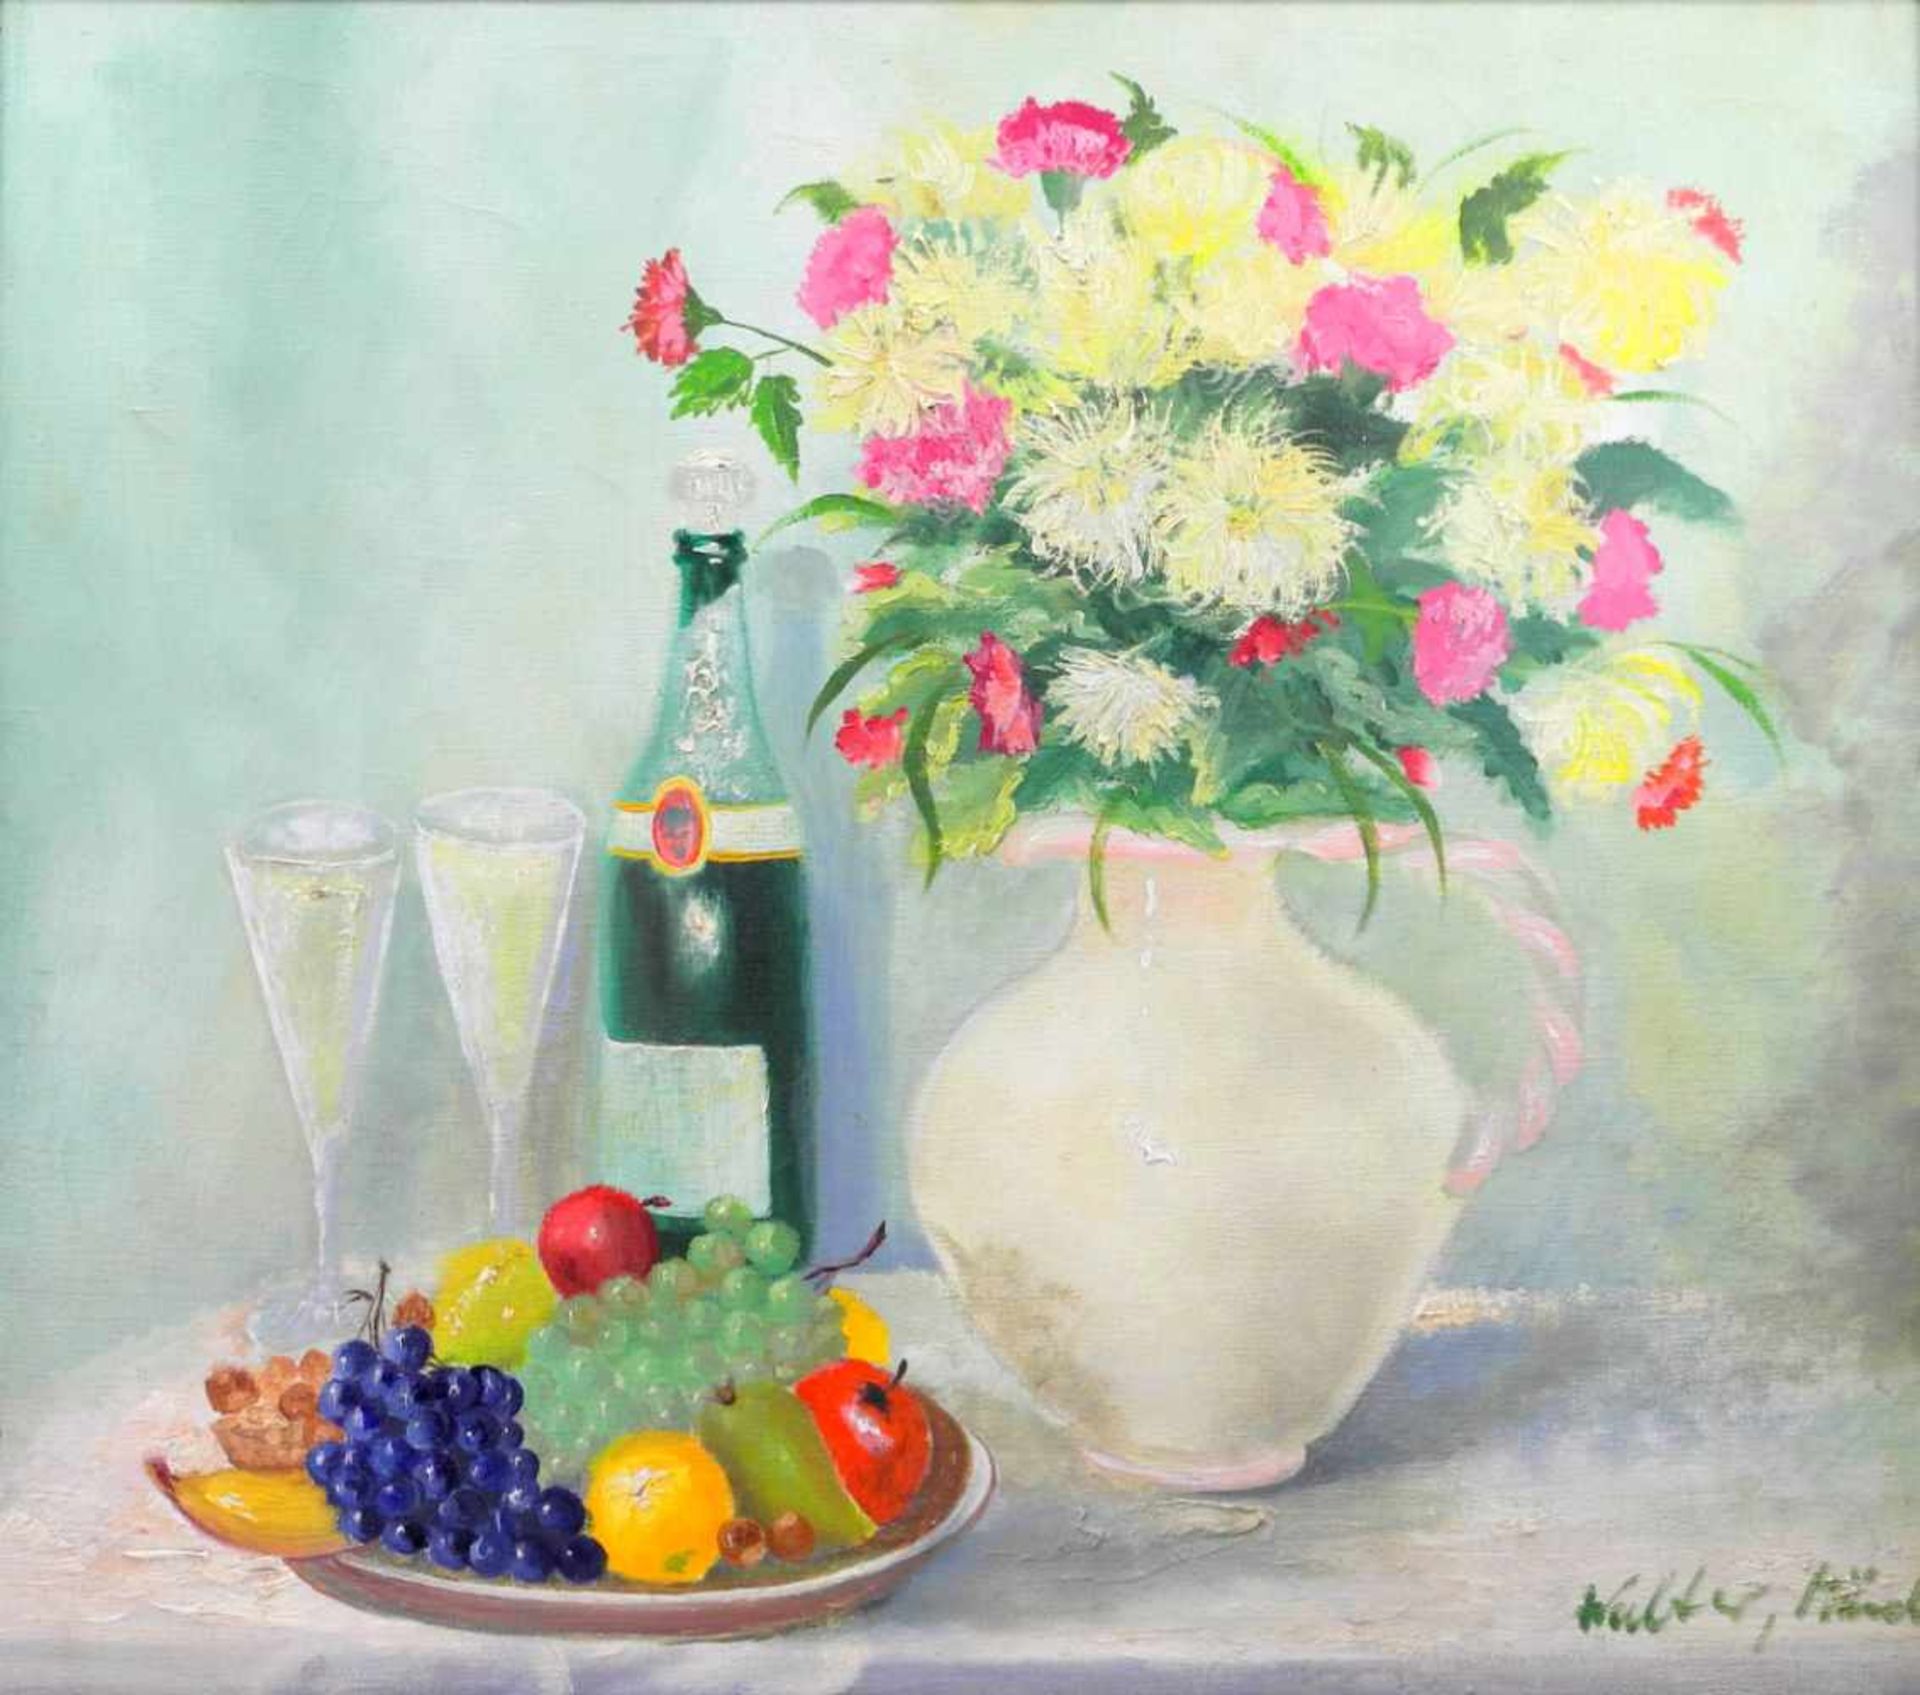 ChampagnerfrühstückÖl/Leinwand. Blumenstillleben mit Champagner und Obstschale in Pasttellfarben.